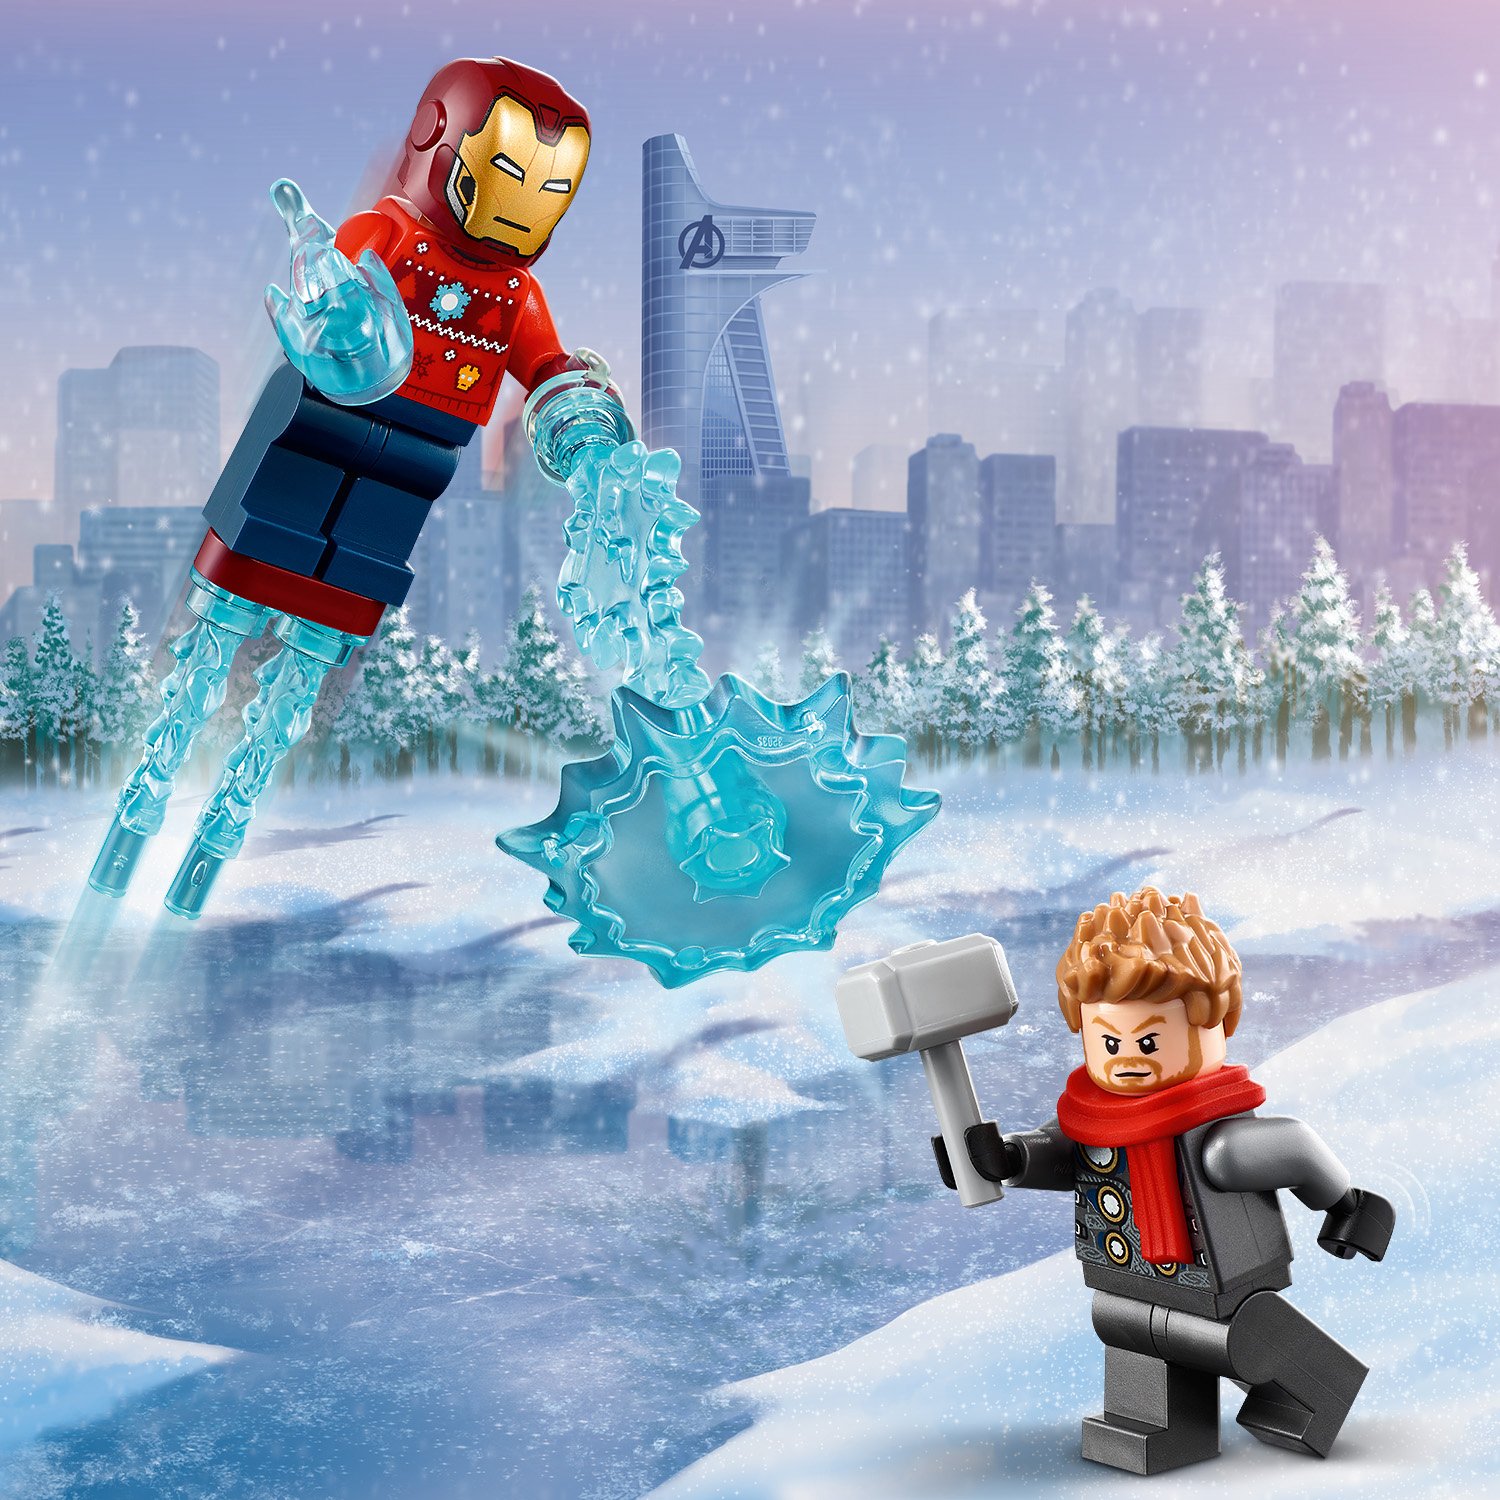 Конструктор LEGO Super Heroes Новогодний Advent календарь 76196